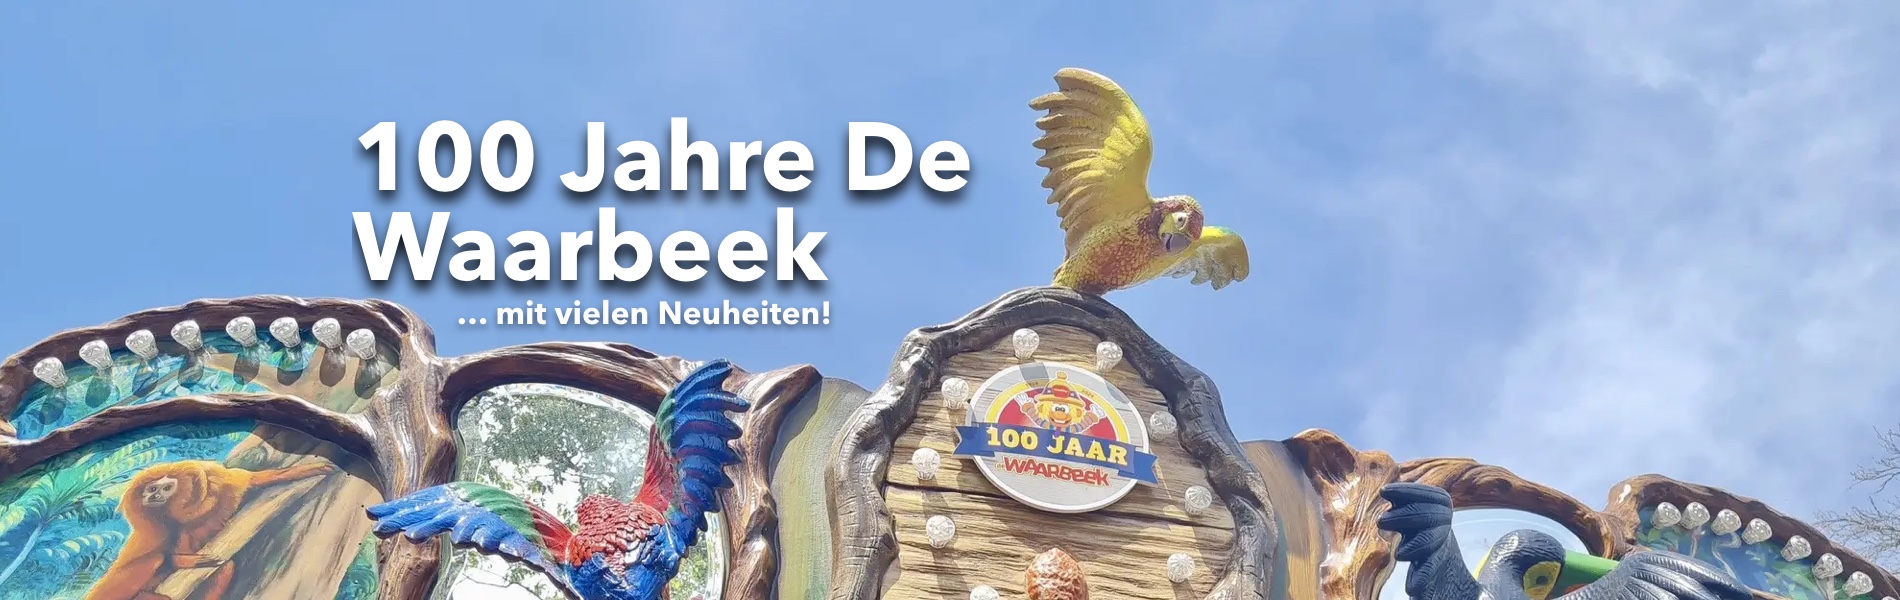 Teaser 100 Jahre De Waarbeek mit vielen Neuheiten